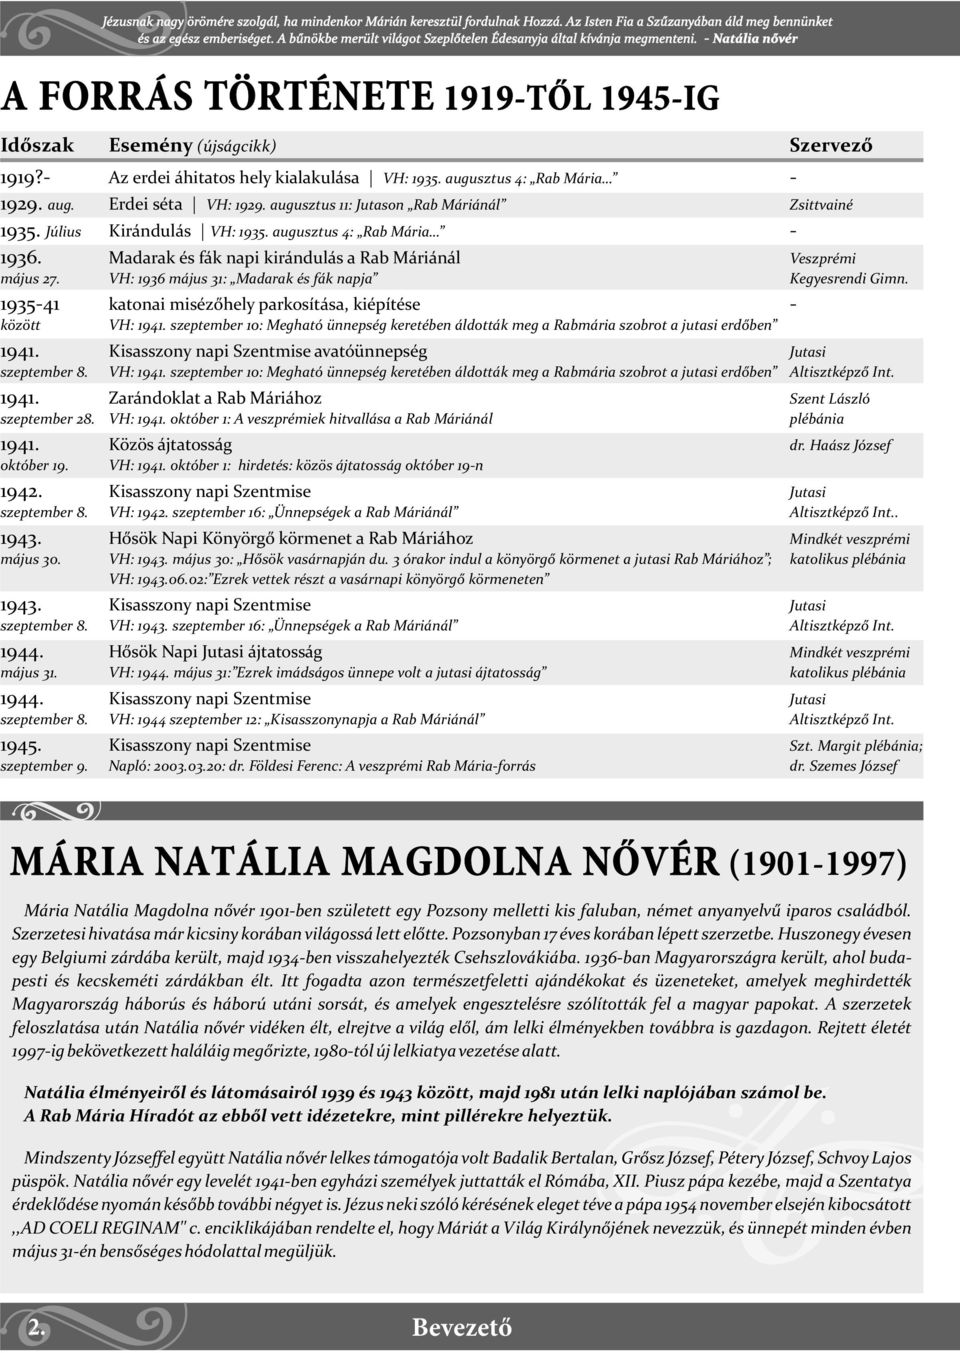 Rab Mária Híradó NATÁLIA NÕVÉR LÁTOMÁSA: A SZENT SZÛZ ELTÁVOZIK  MAGYARORSZÁGRÓL. Tartalomjegyzék: A Rab Mária Forrás 1943-ban - PDF  Ingyenes letöltés